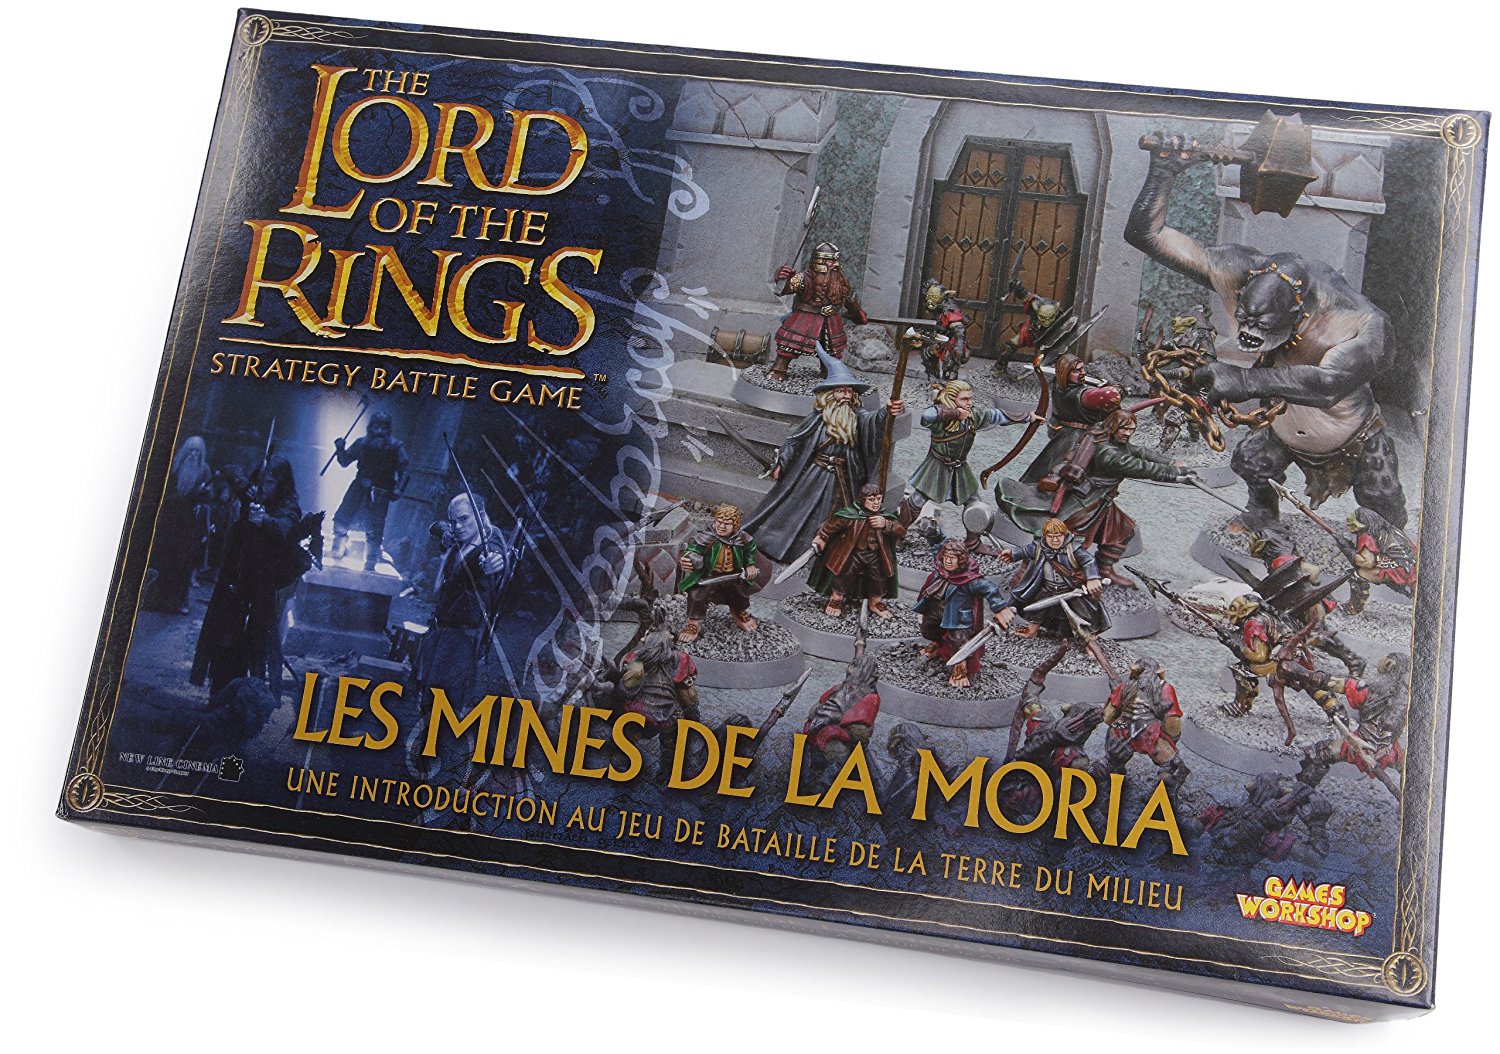 Le seigneur des anneaux : Le jeu de figurines - les mines de la moria